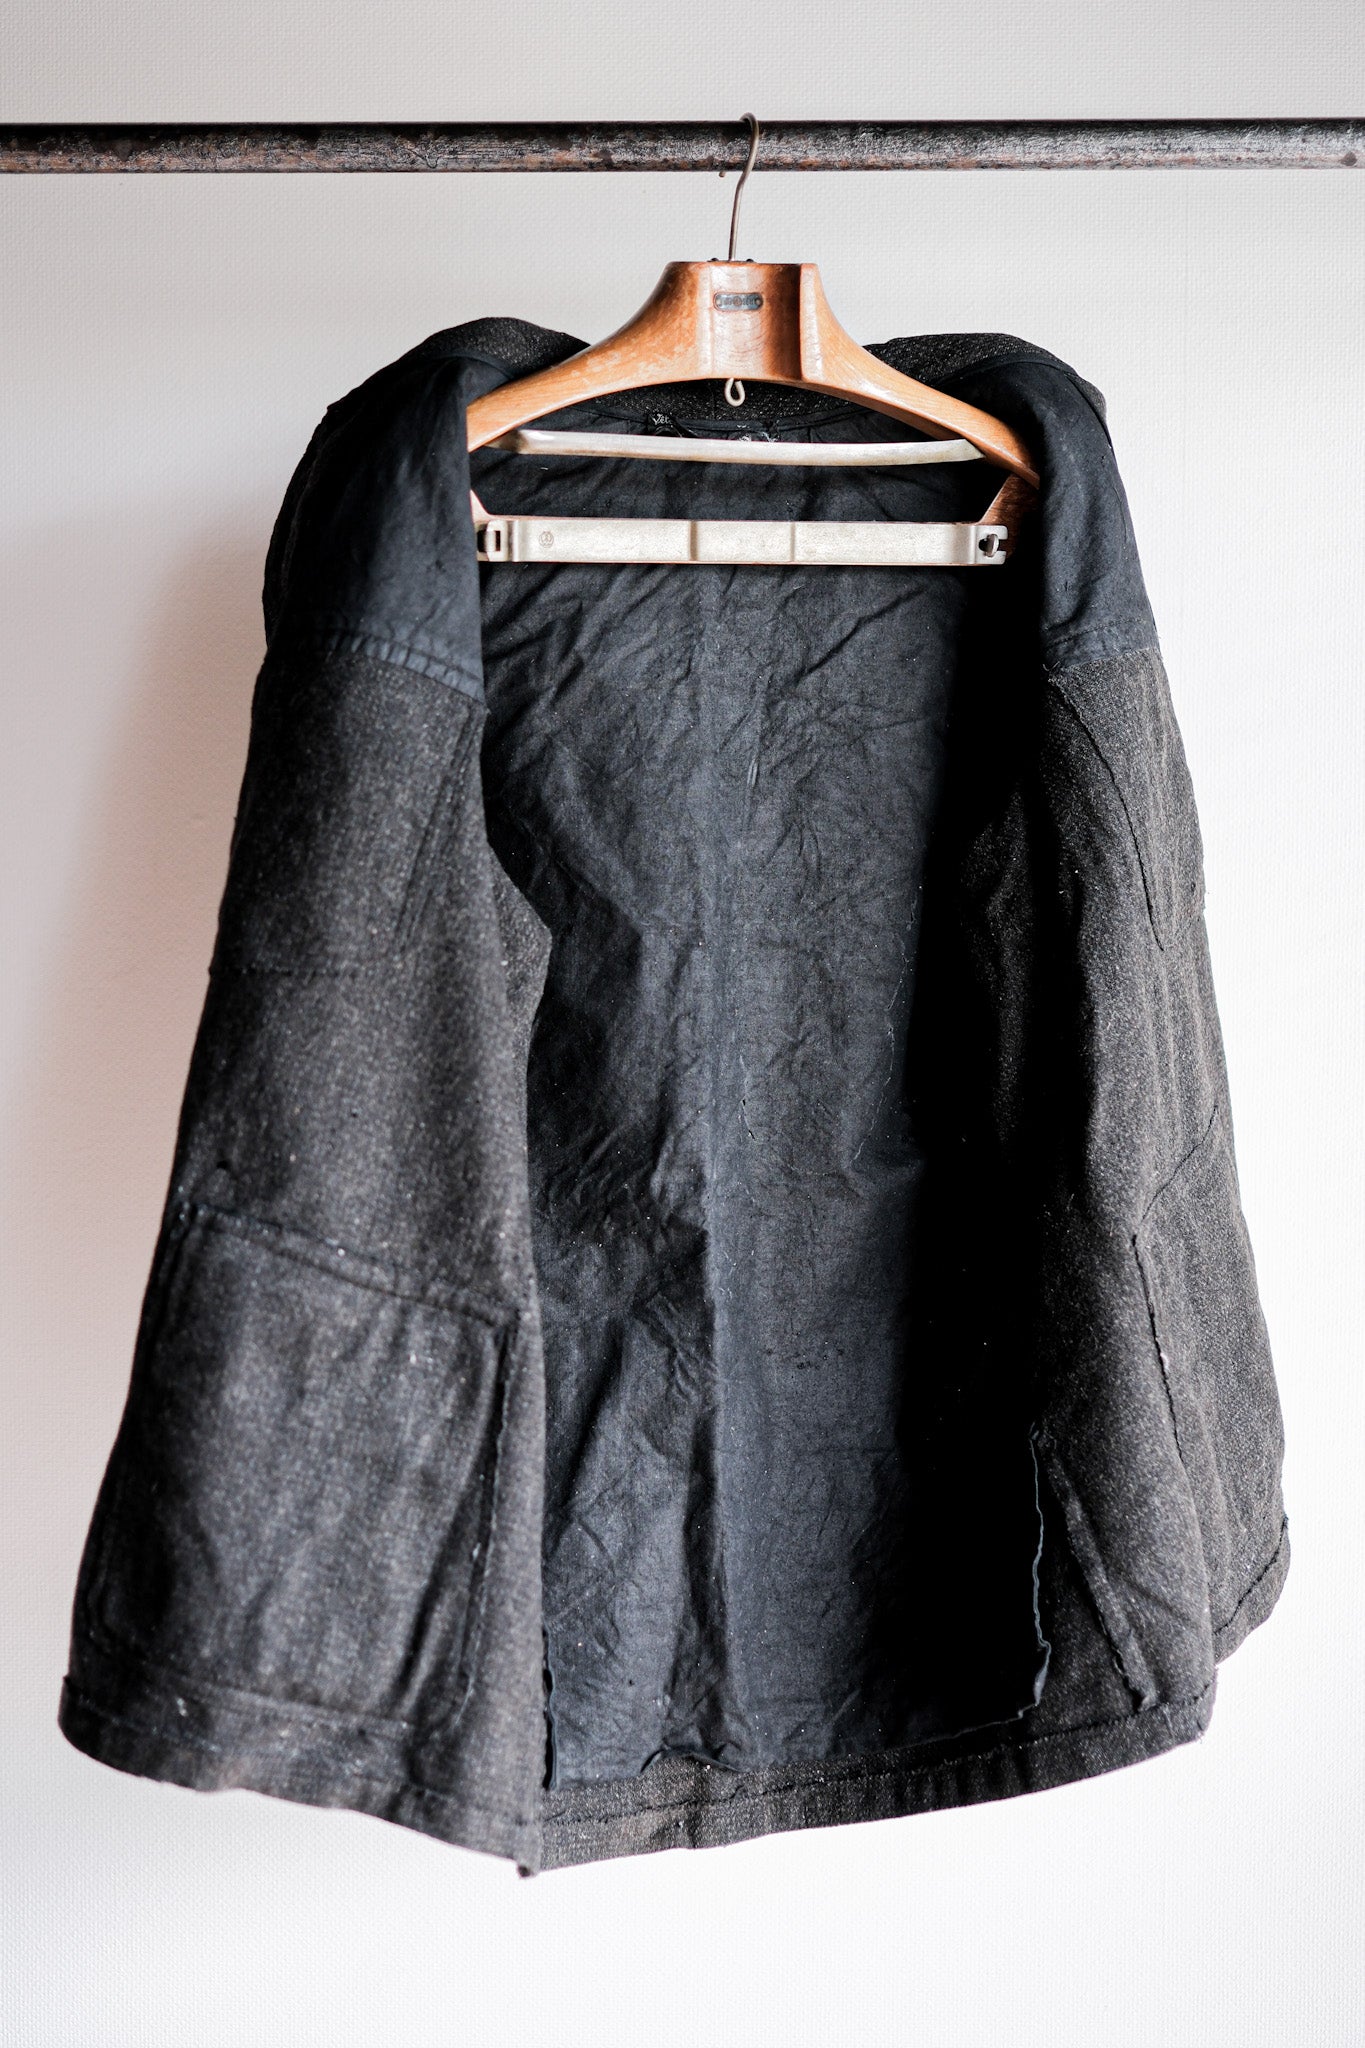 [~30 年代] 法國復古灰色羊毛狩獵夾克，帶下巴帶“Boro”